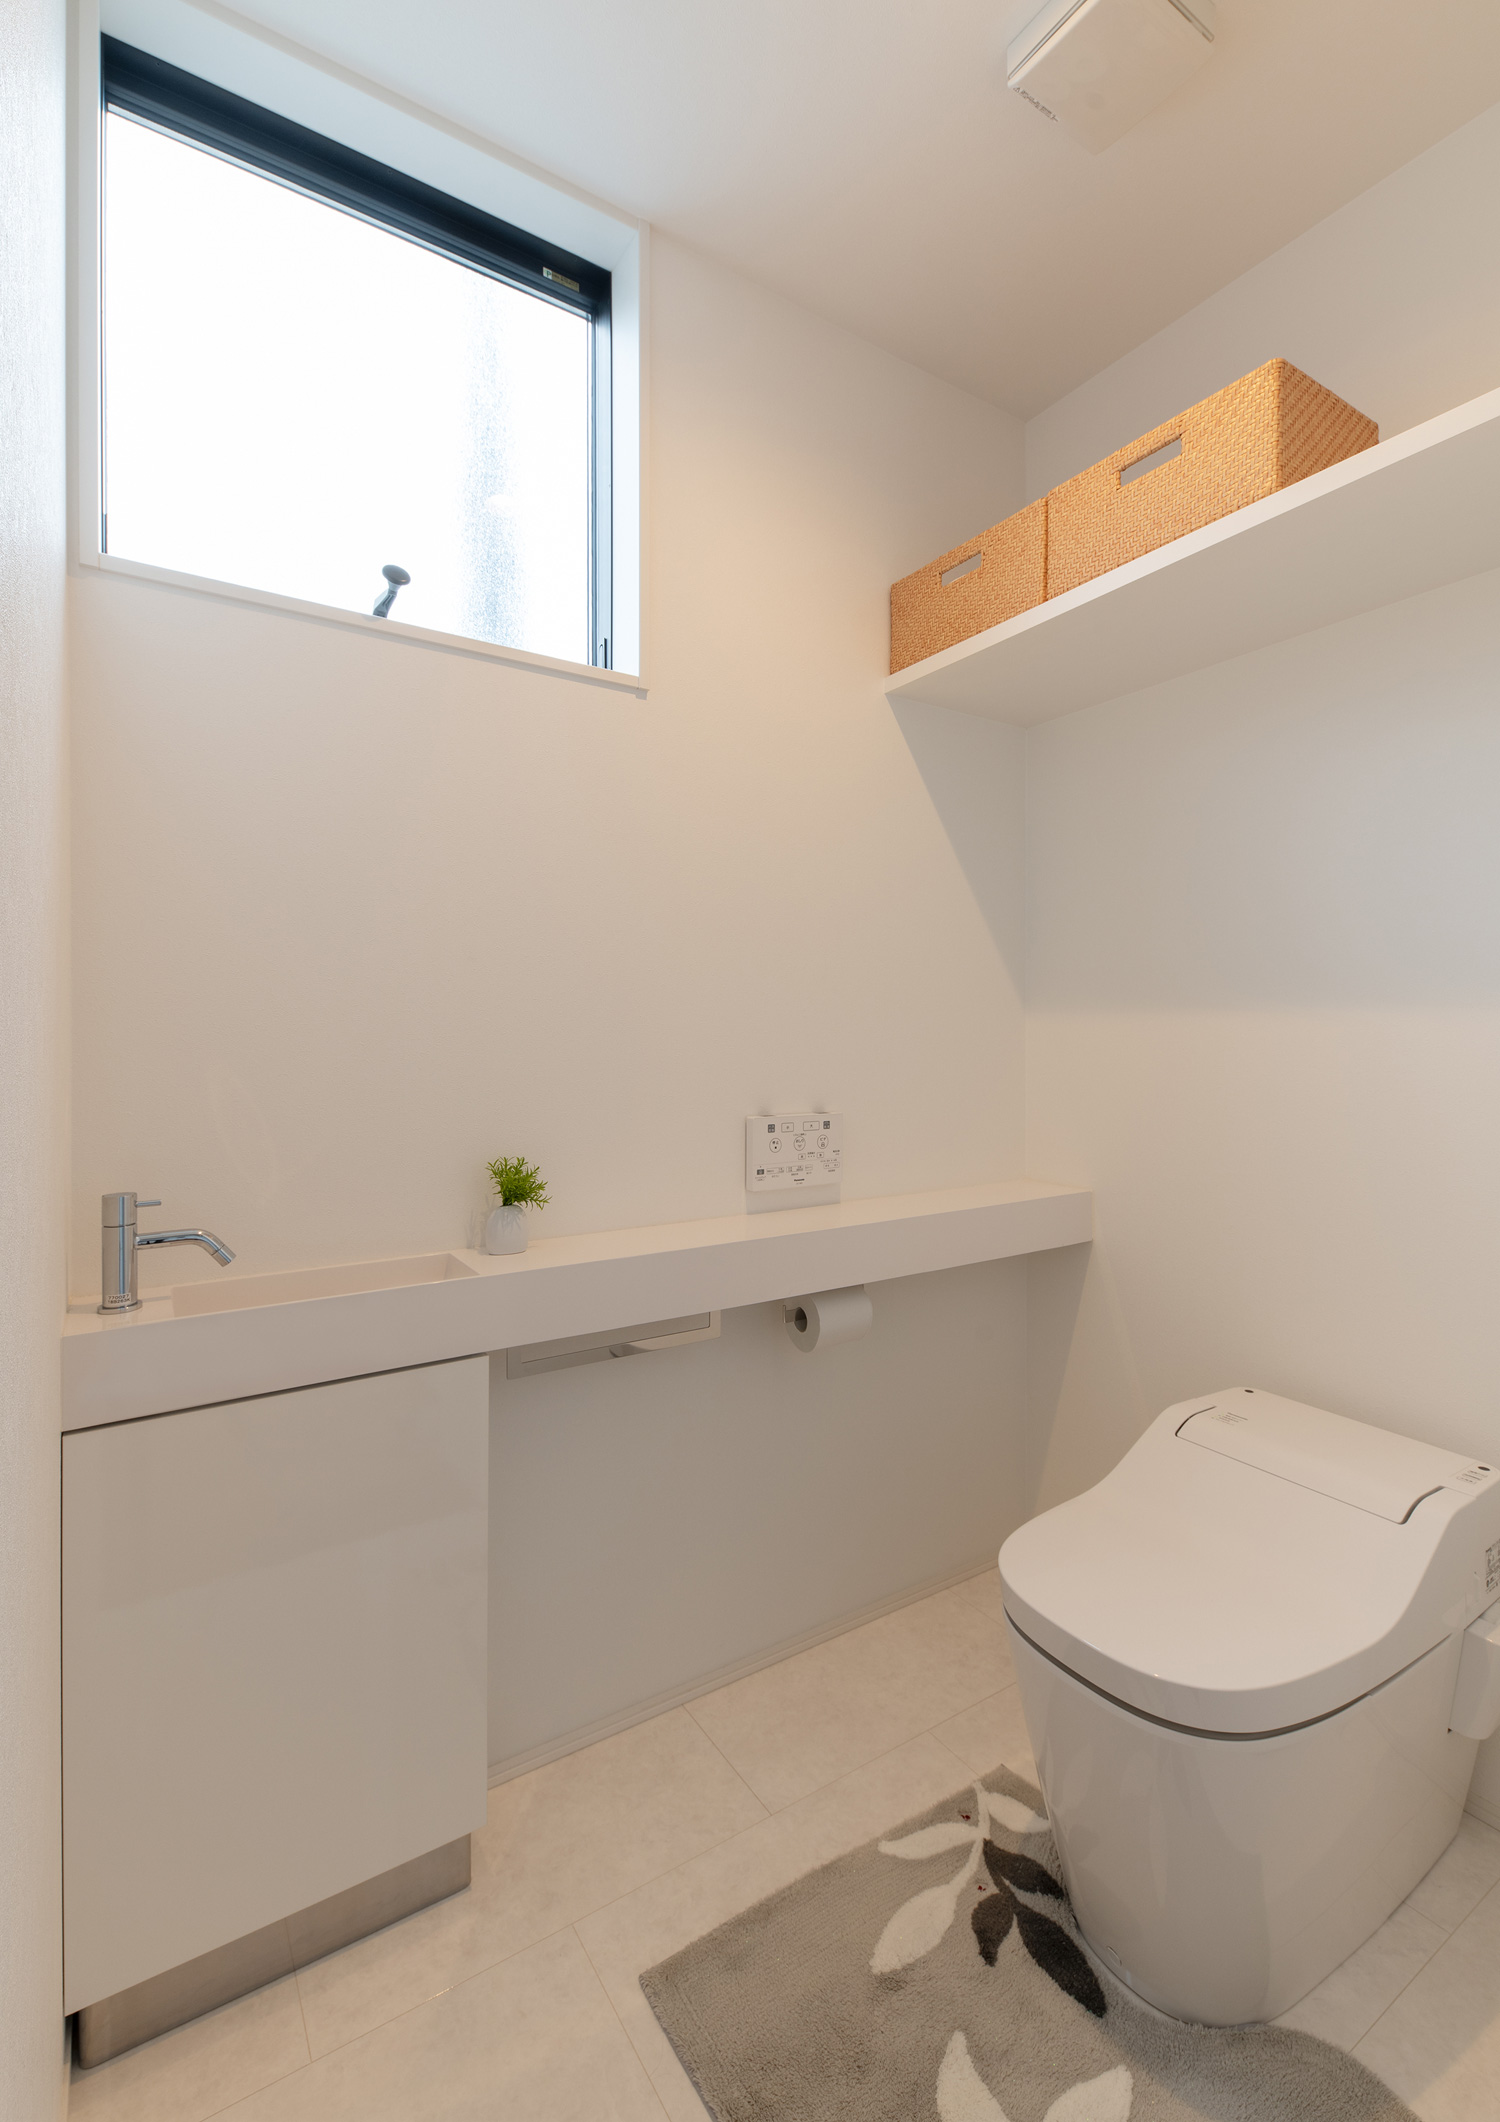 壁付けの棚や薄型手洗いがある白い壁のトイレ・デザイン住宅